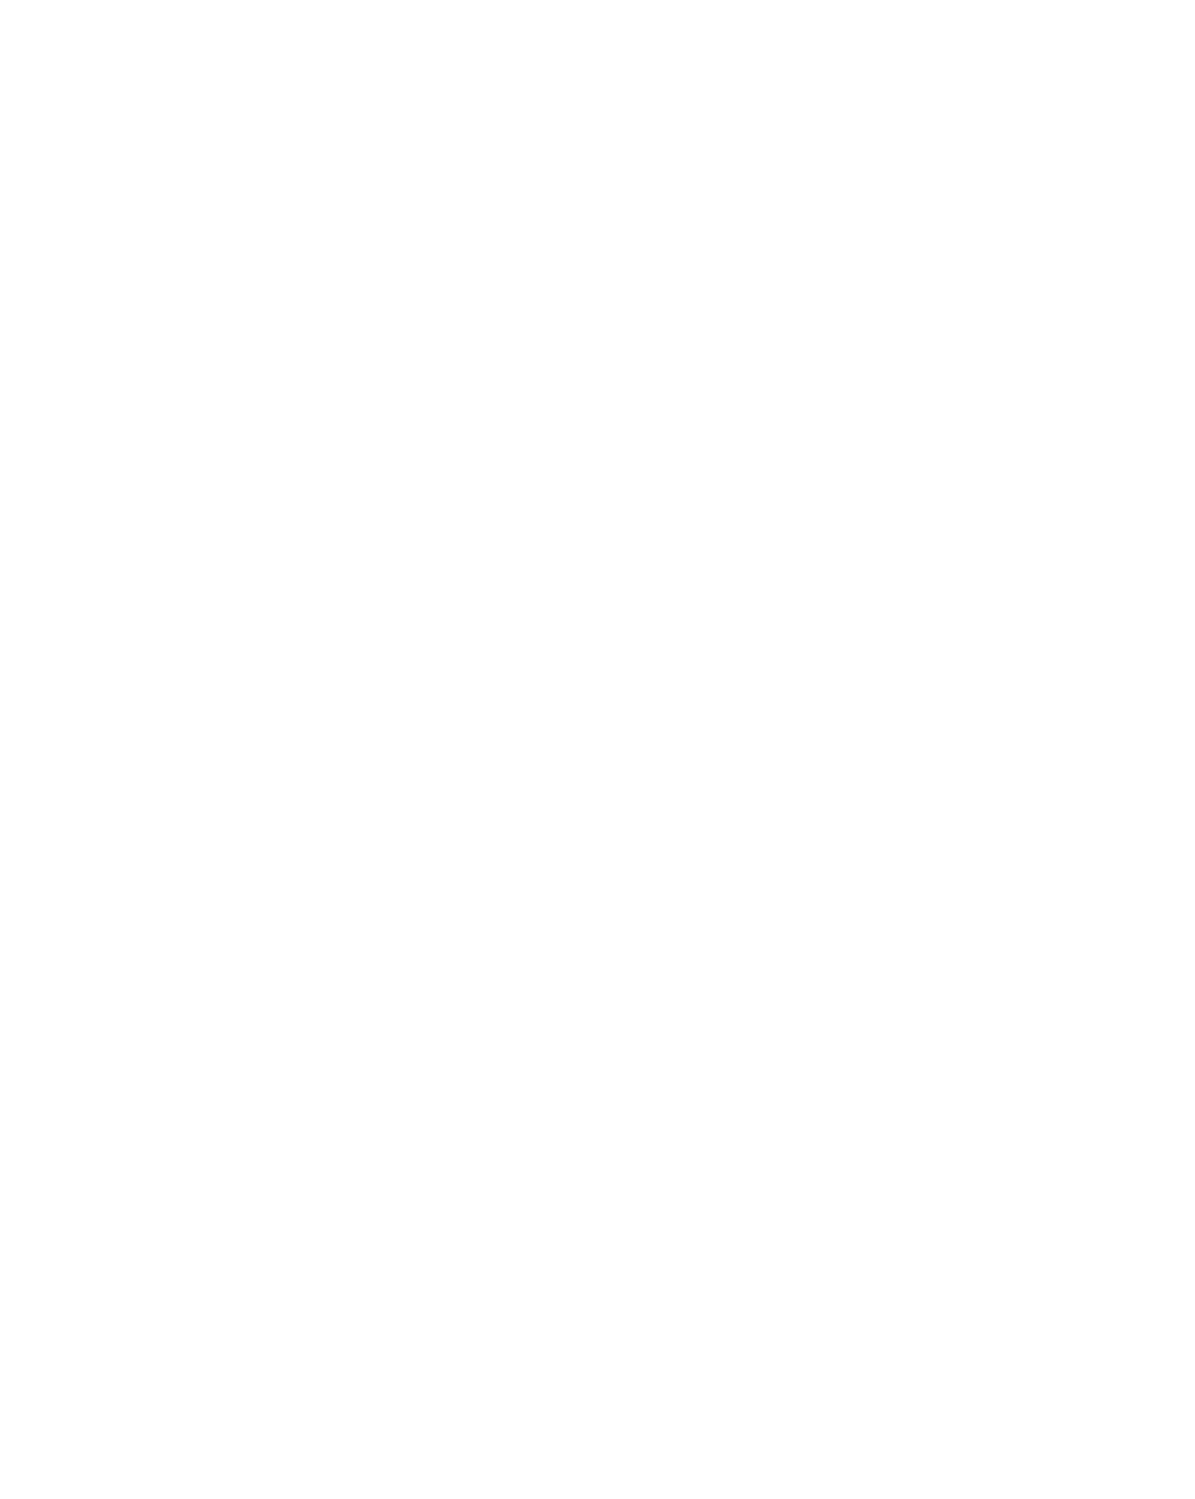 4imprint Group logo for dark backgrounds (transparent PNG)